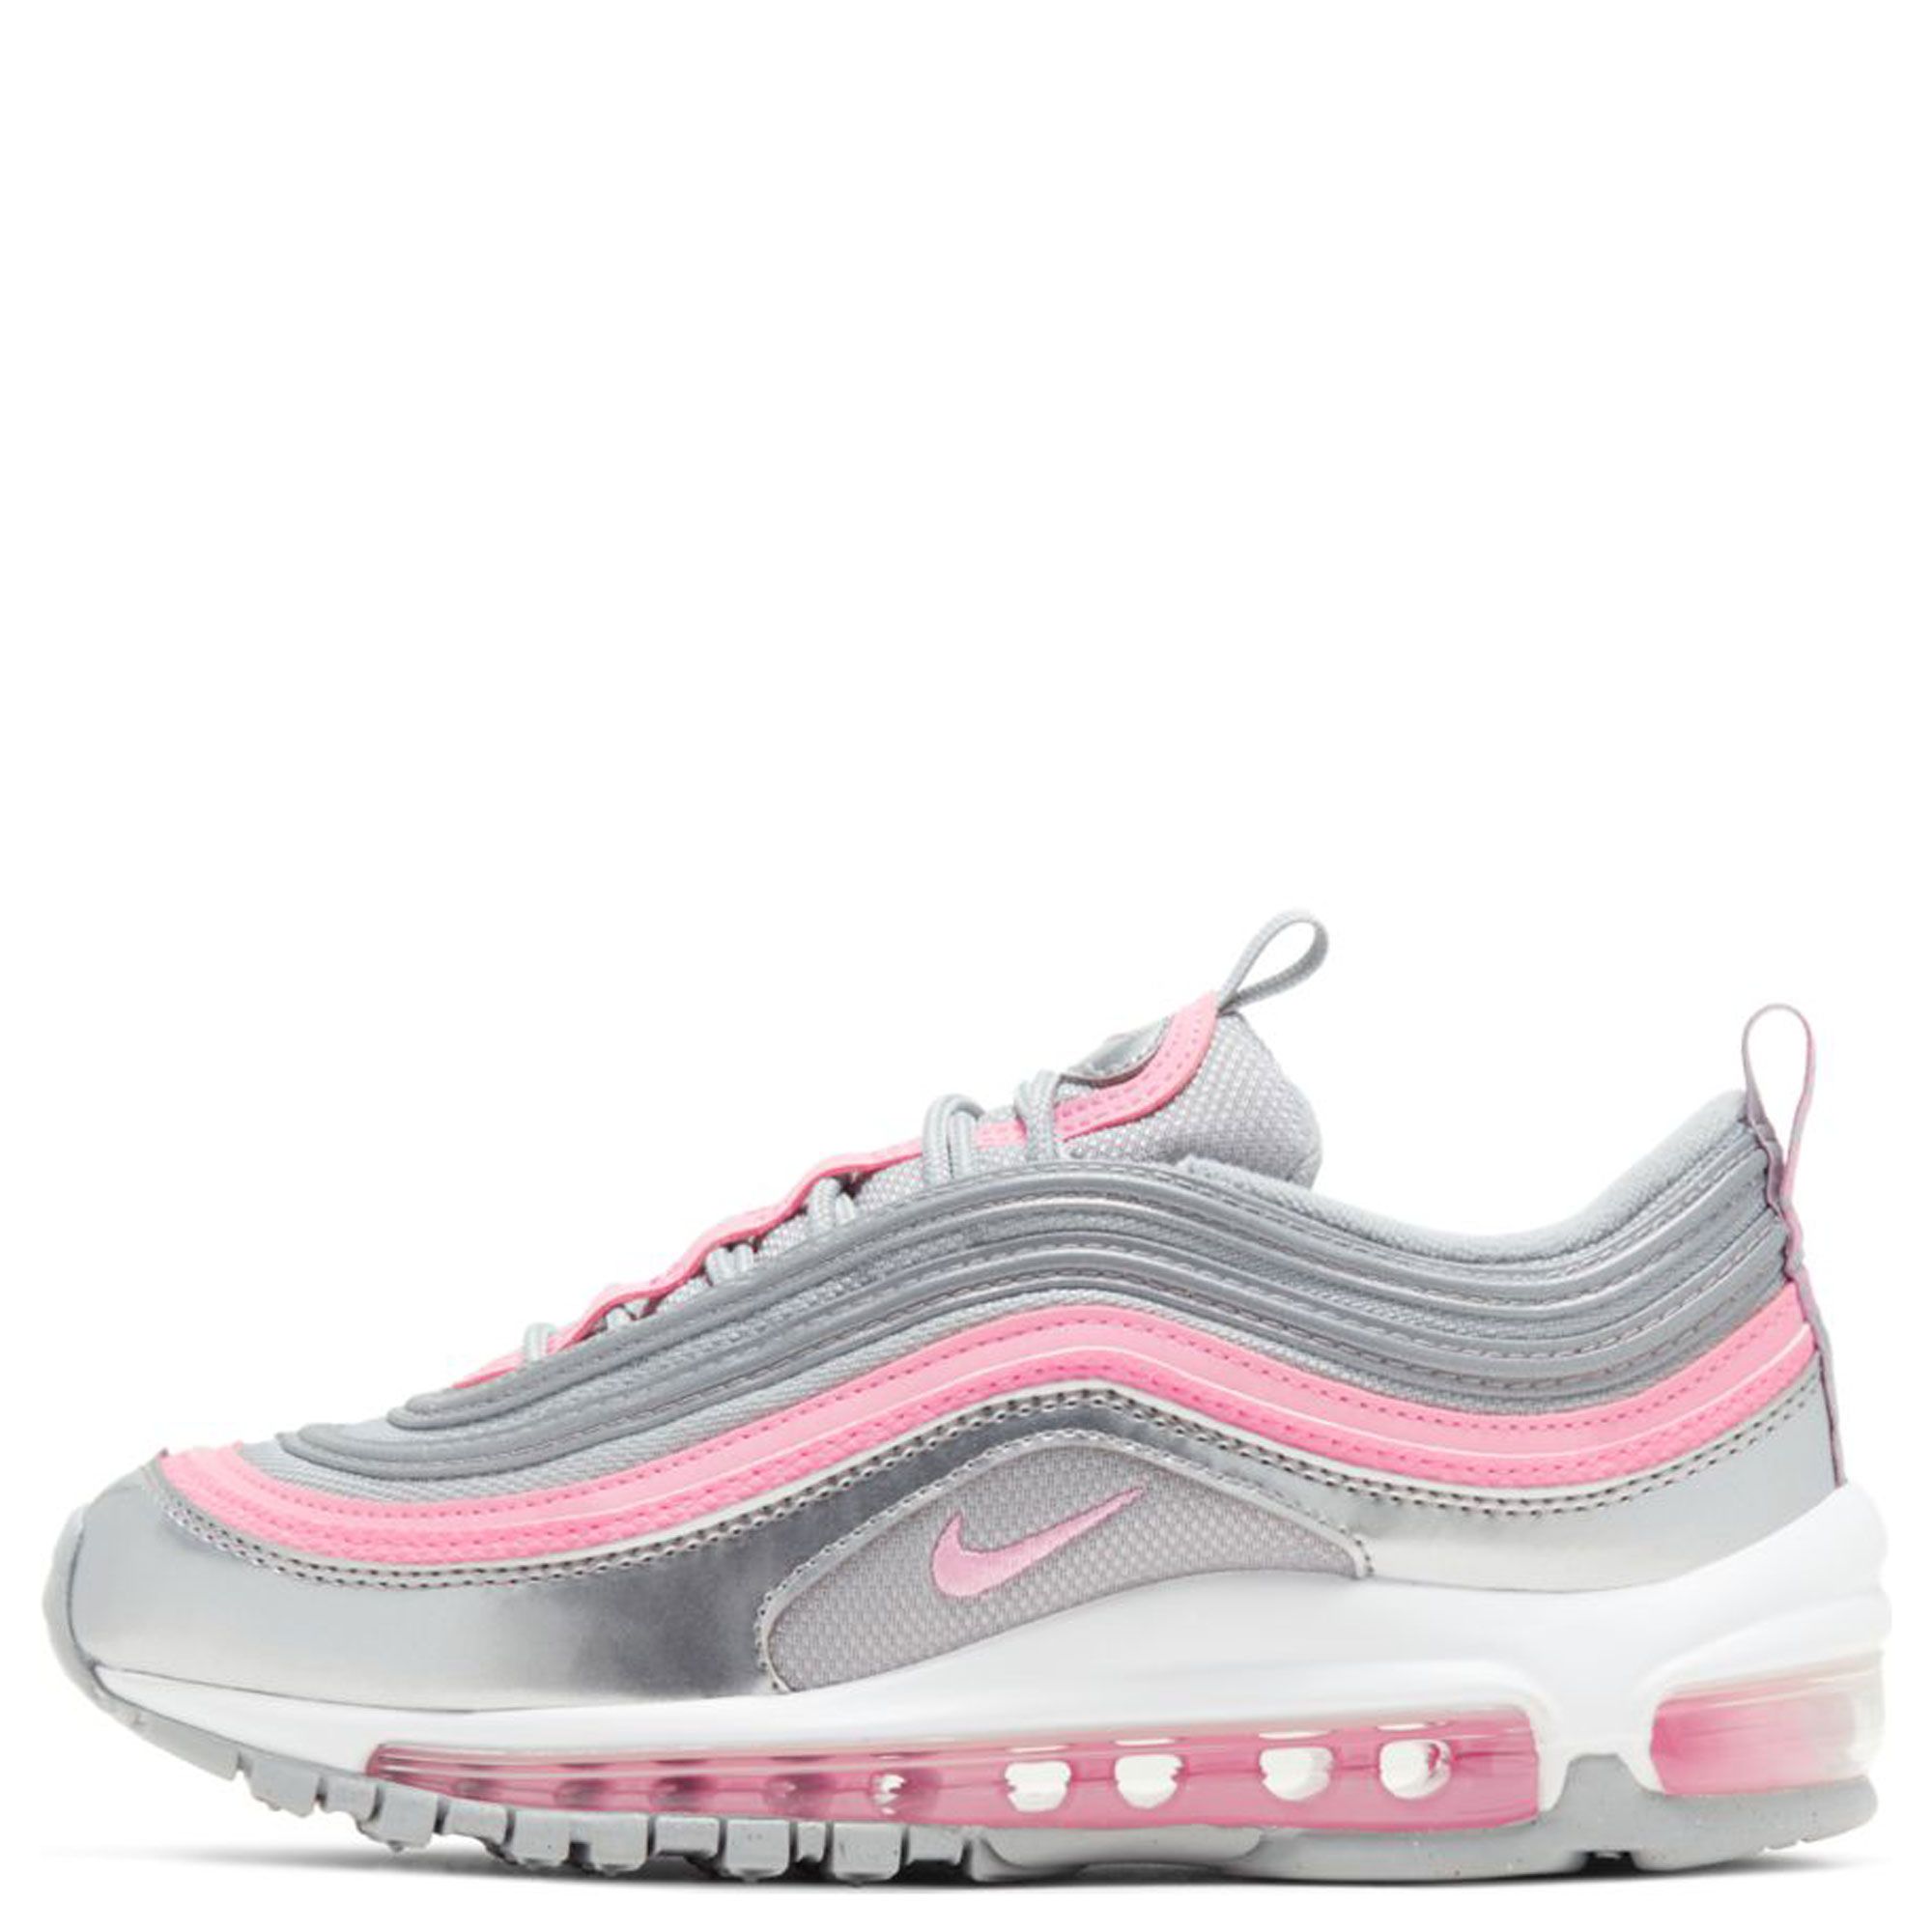 air max 97 grey and pink